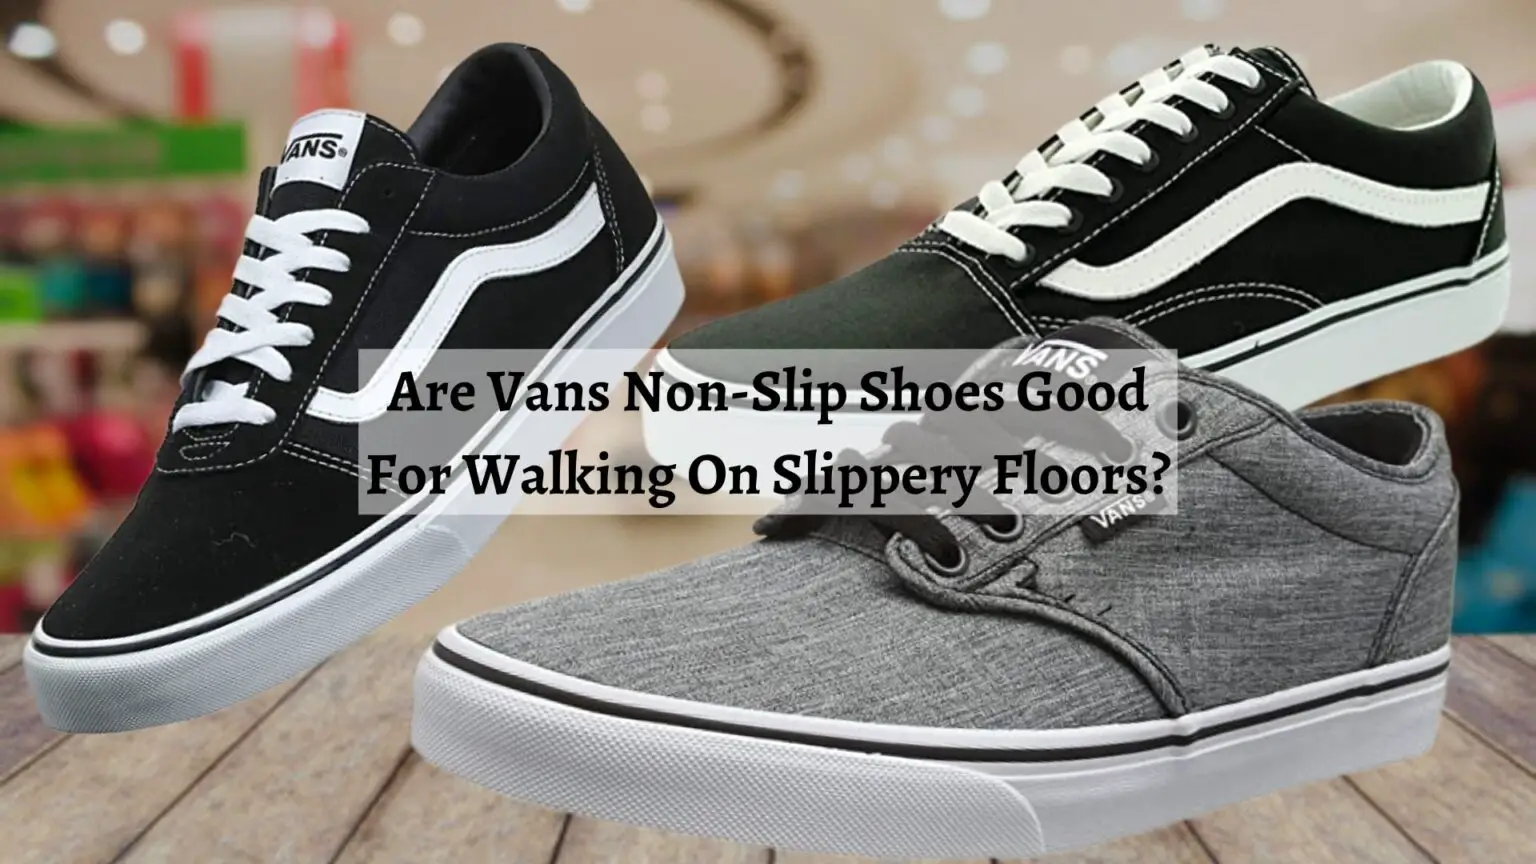 Are Vans Non-Slip Shoes Good For Walking On Slippery Floors? - Shoe Filter